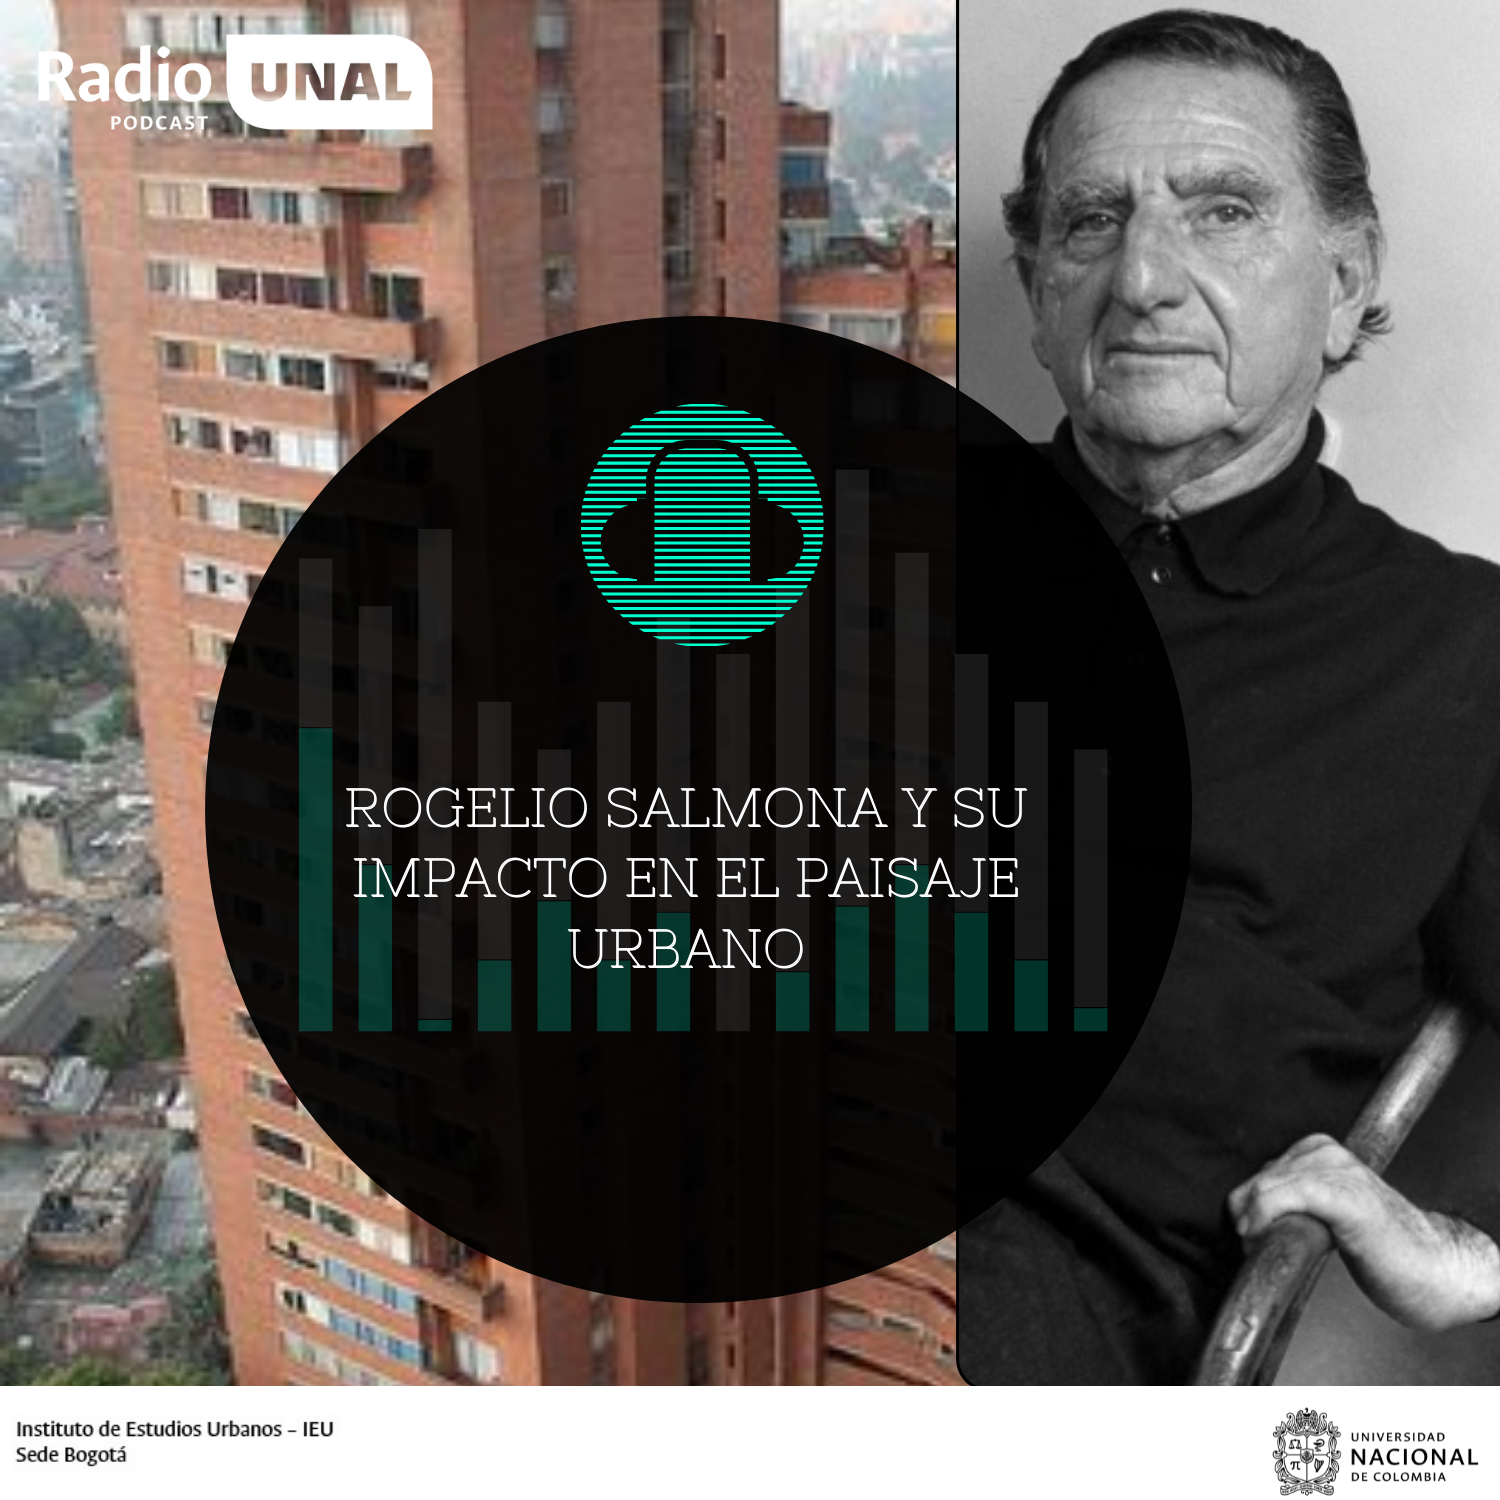 #PodcastUNAL Rogelio Salmona y su impacto en el paisaje urbano